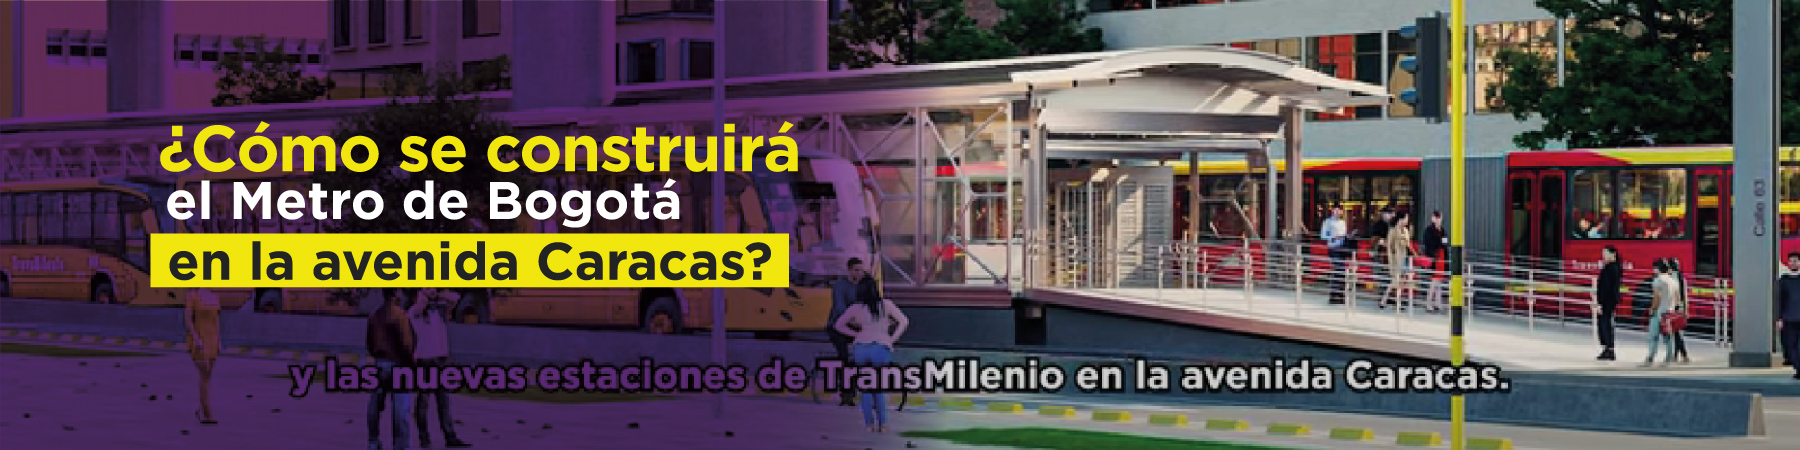 ¿Cómo se construirá el Metro de Bogotá en la avenida Caracas?